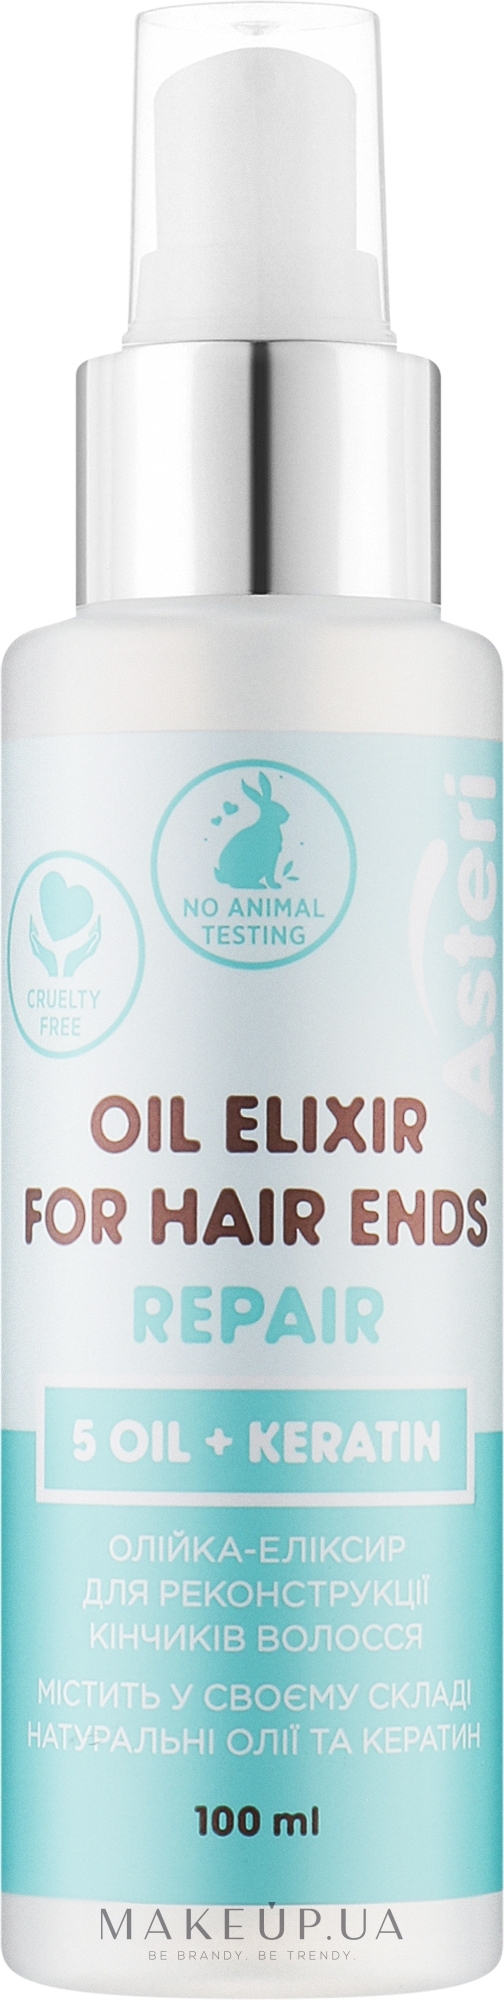 Oлійка-еліксир для реконструкції кінчиків волосся - Asteri Repair Oil Elixir For Hair Ends — фото 100ml